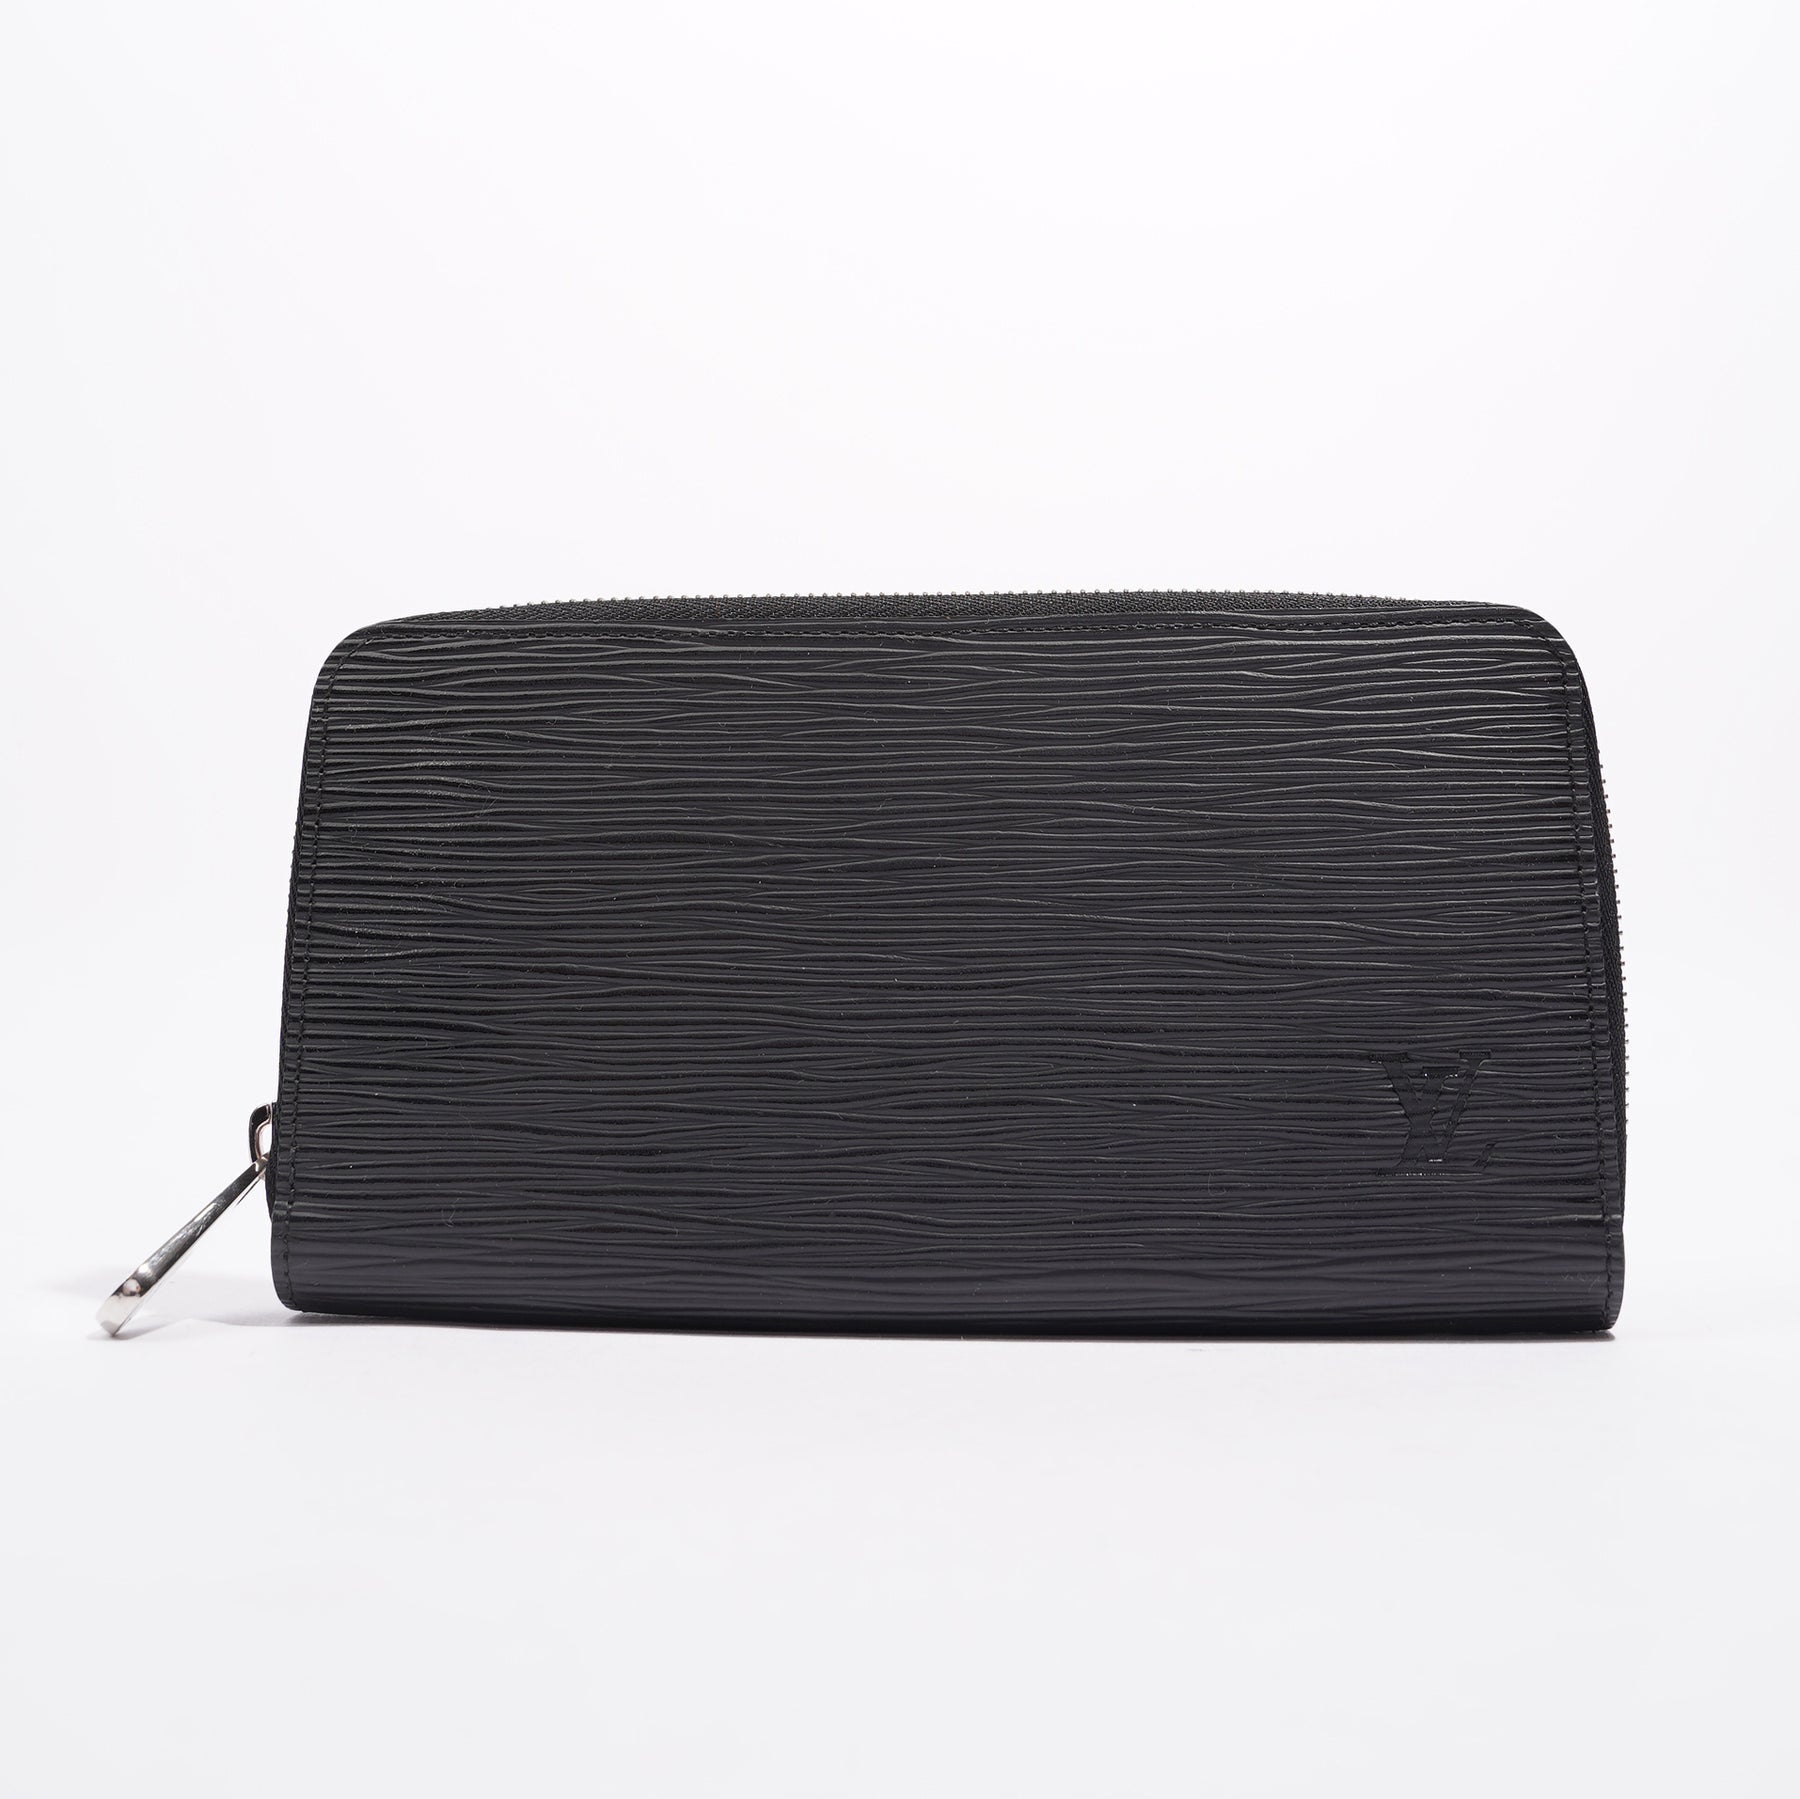 Louis Vuitton Travel Organizer in Black Epi Leather -  India